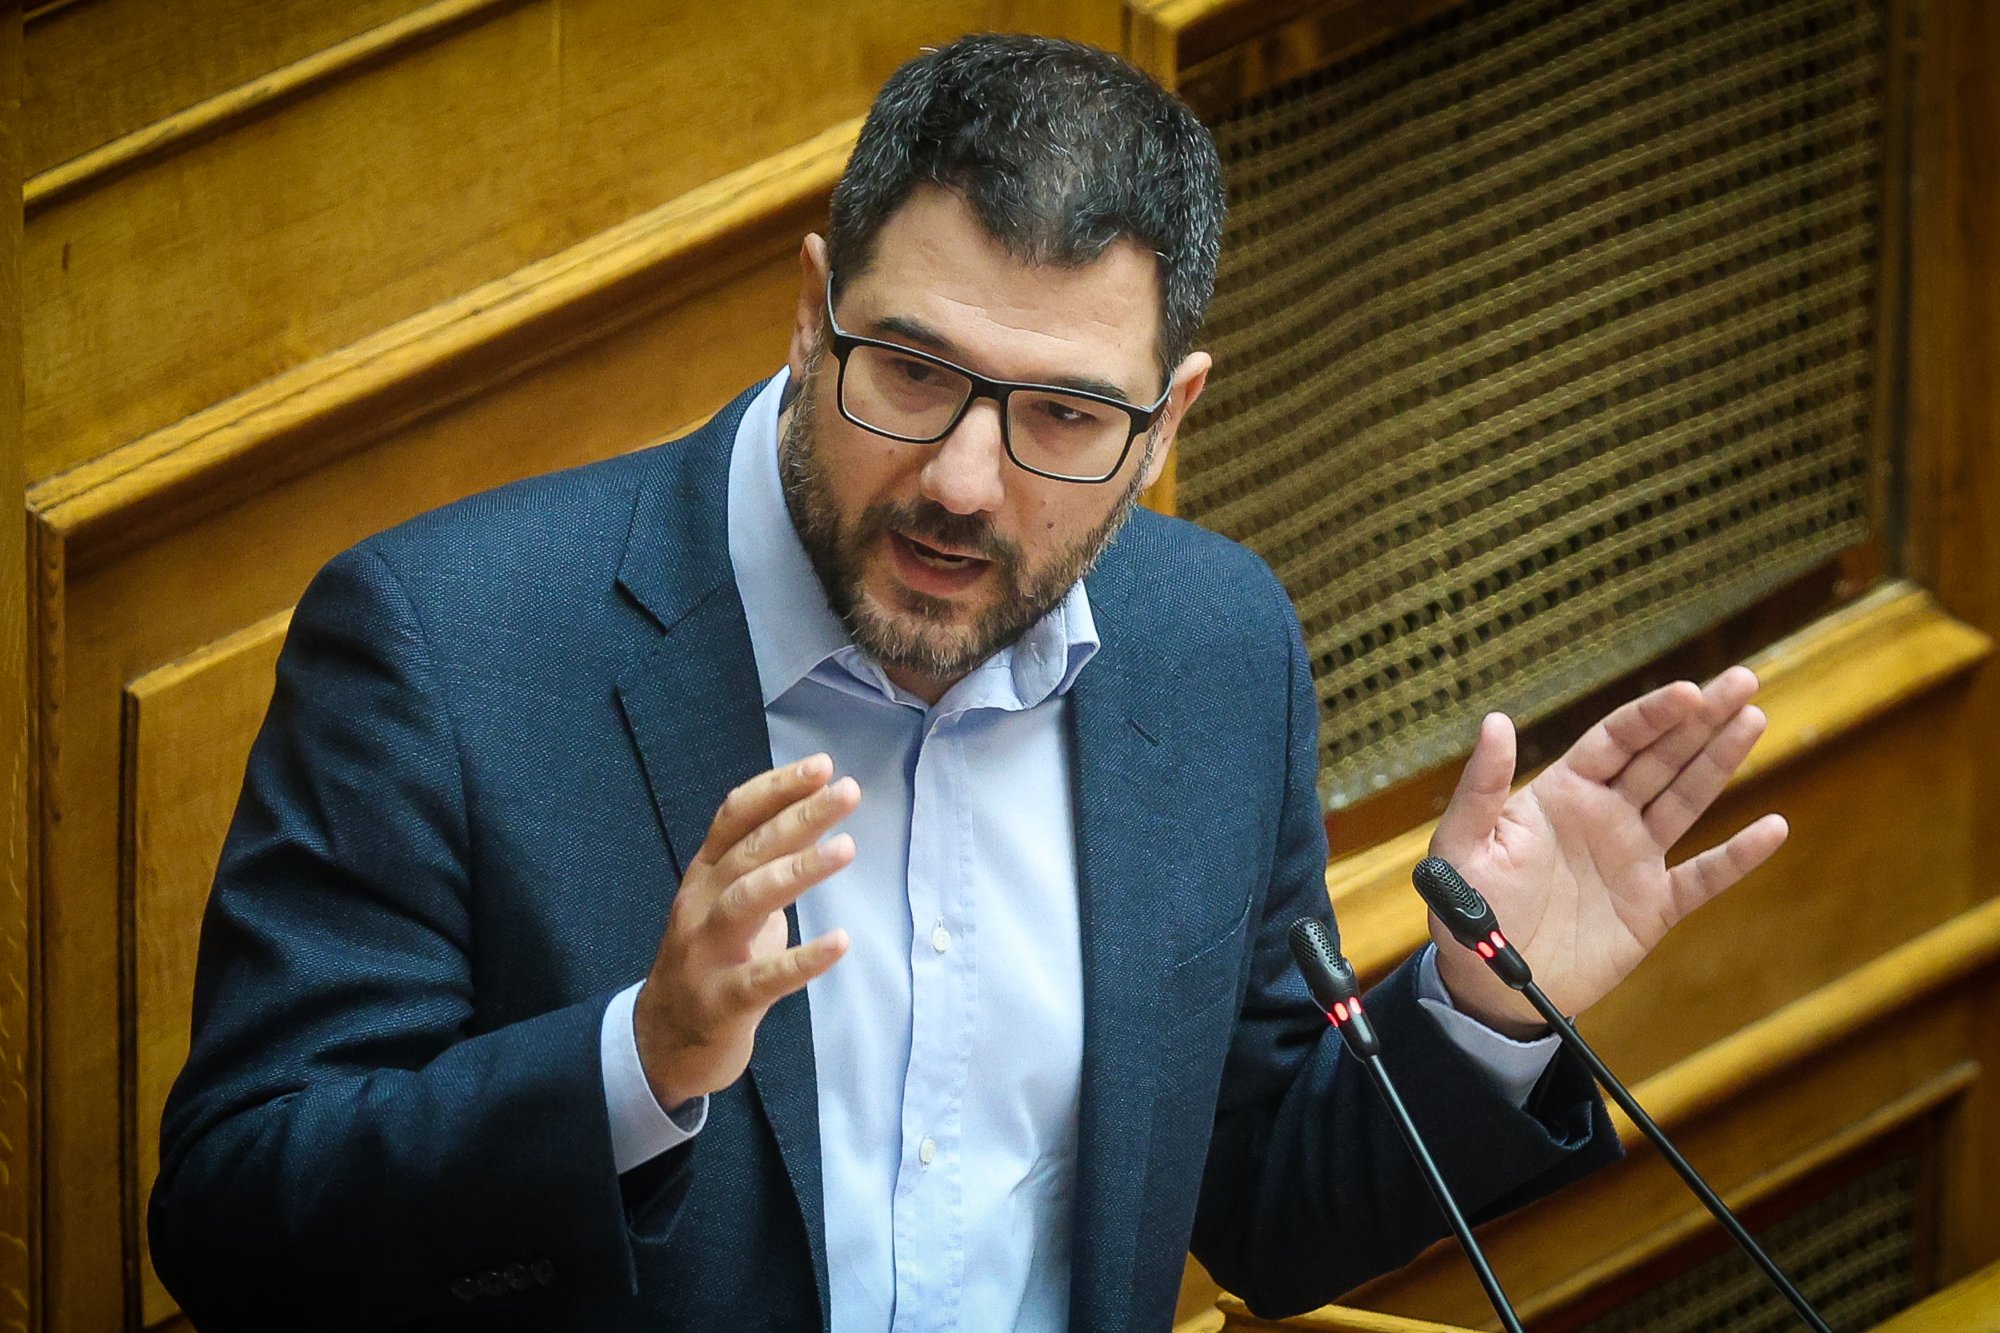 Νέα Αριστερά: Ο Ν.Ηλιόπουλος αναλαμβάνει εκπρόσωπος Τύπου